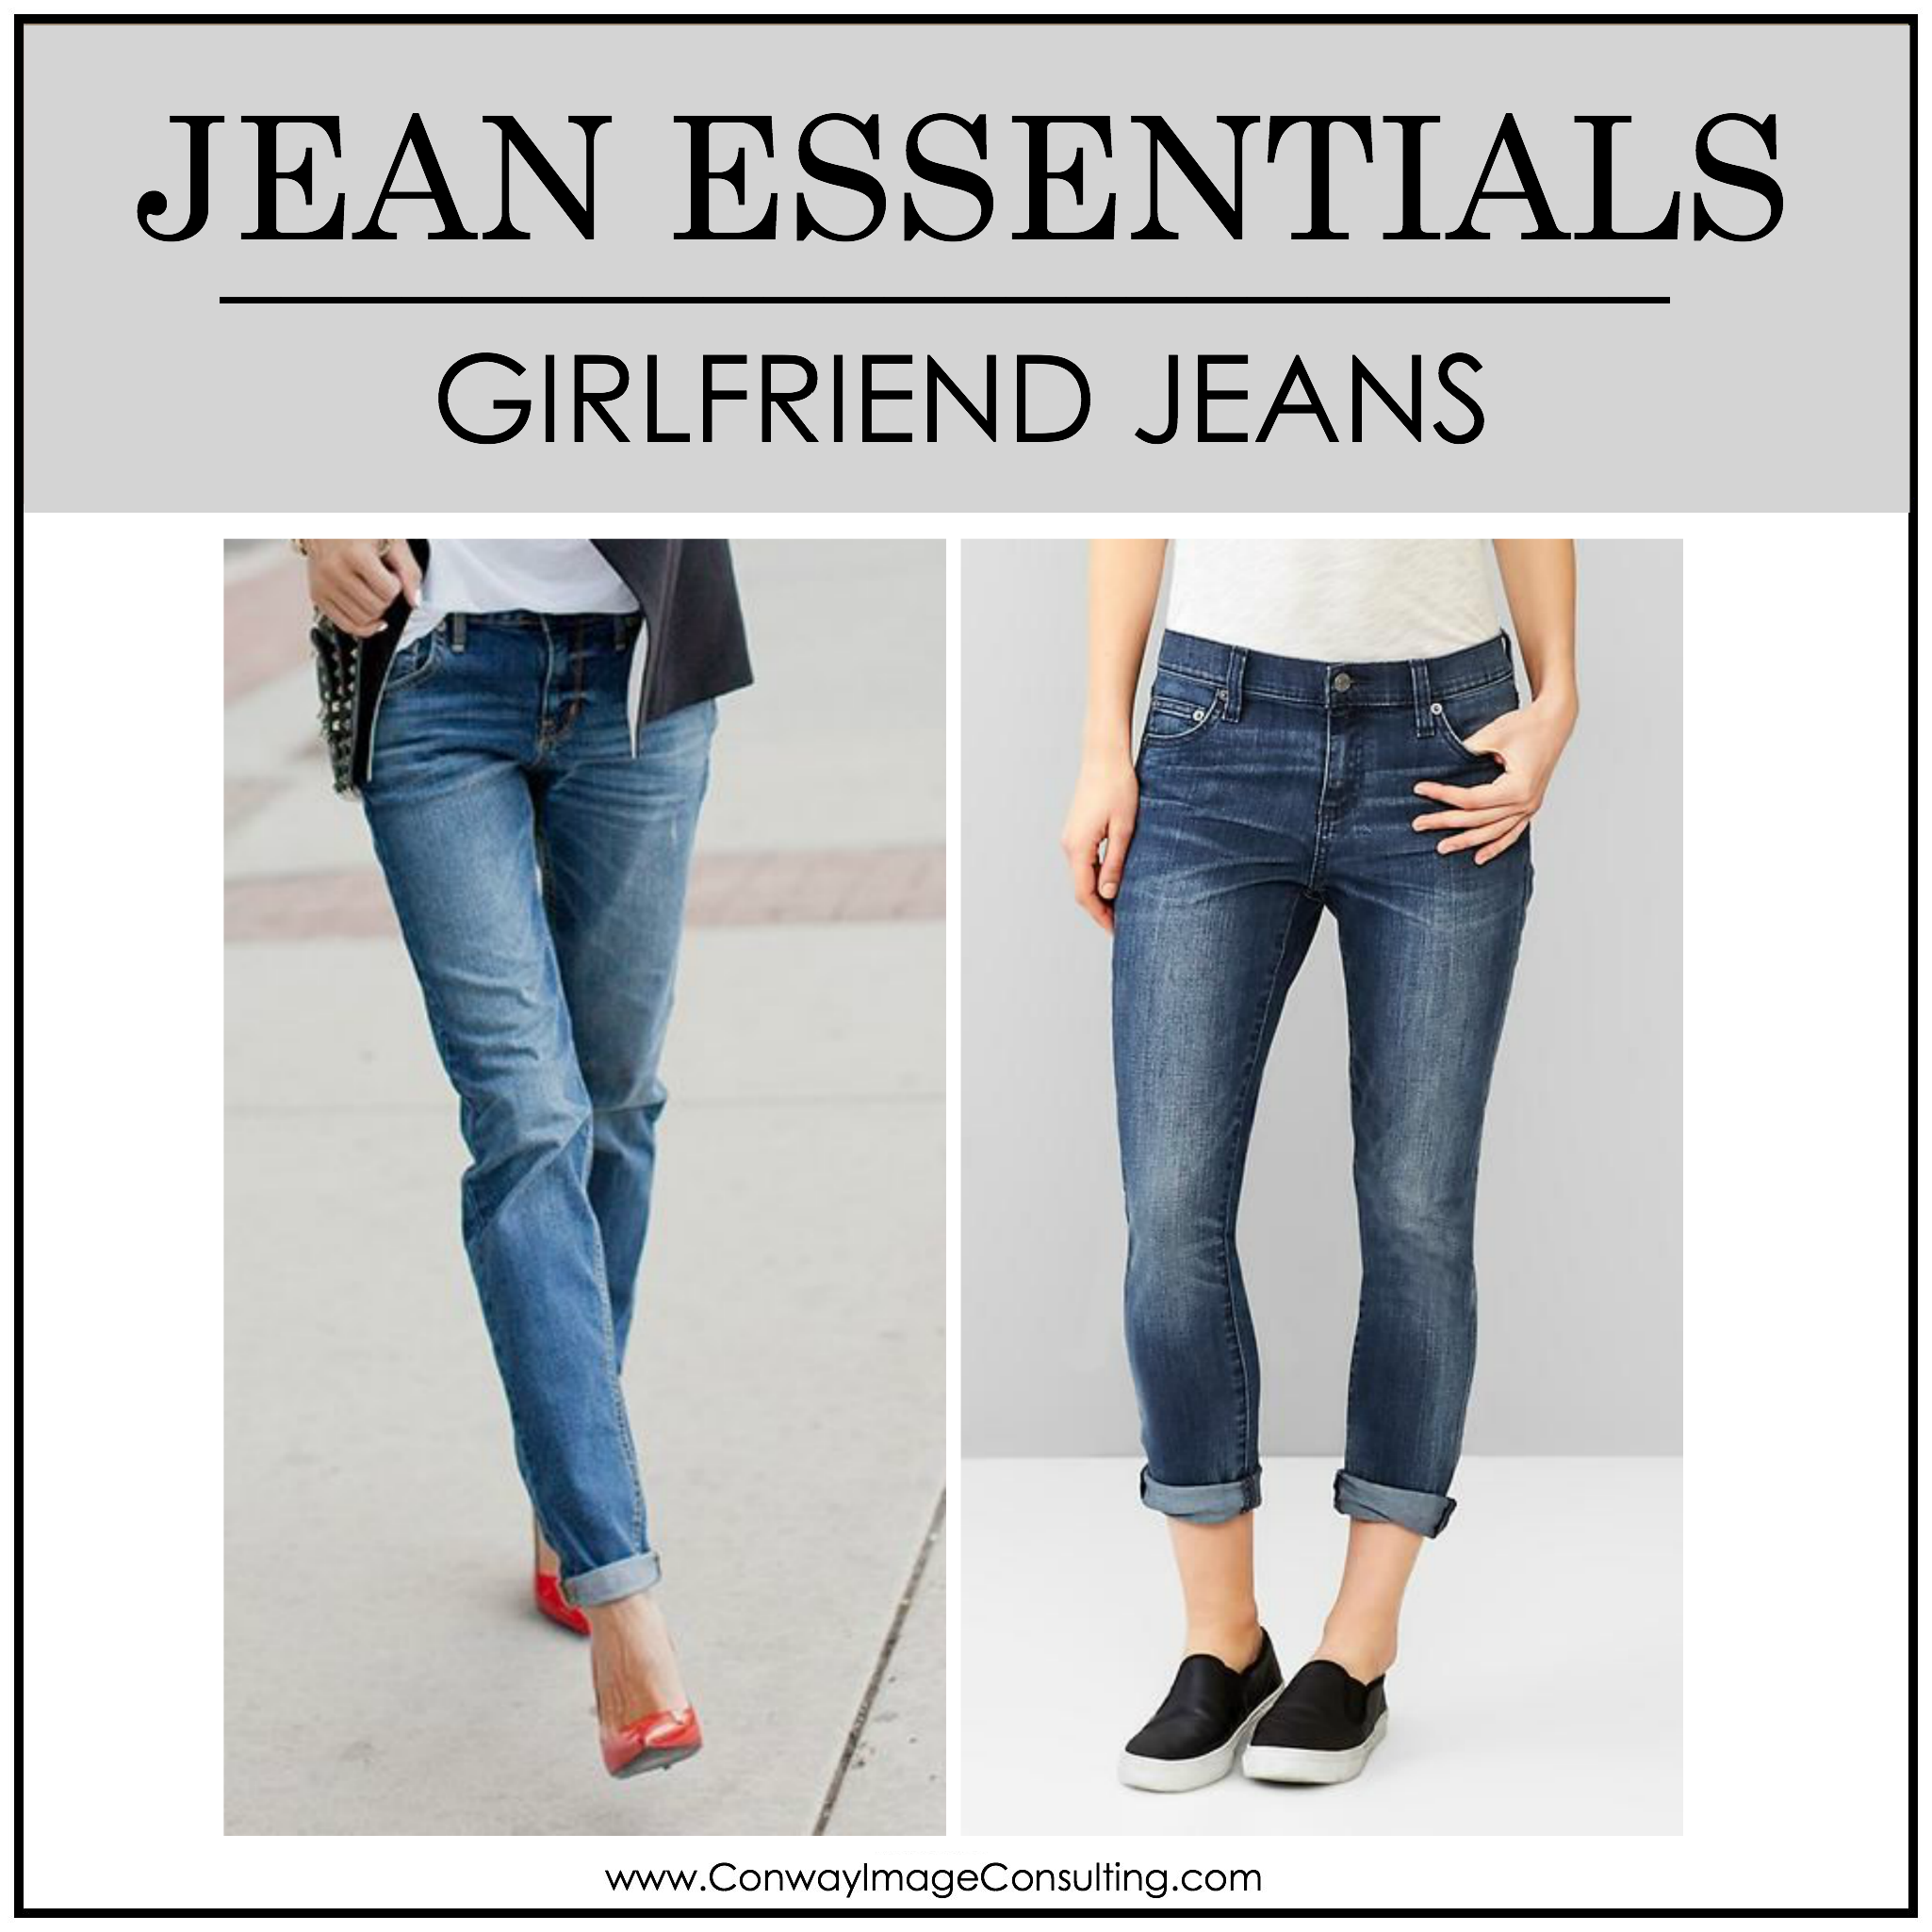  Jean Essentials: Girlfriend Jeans